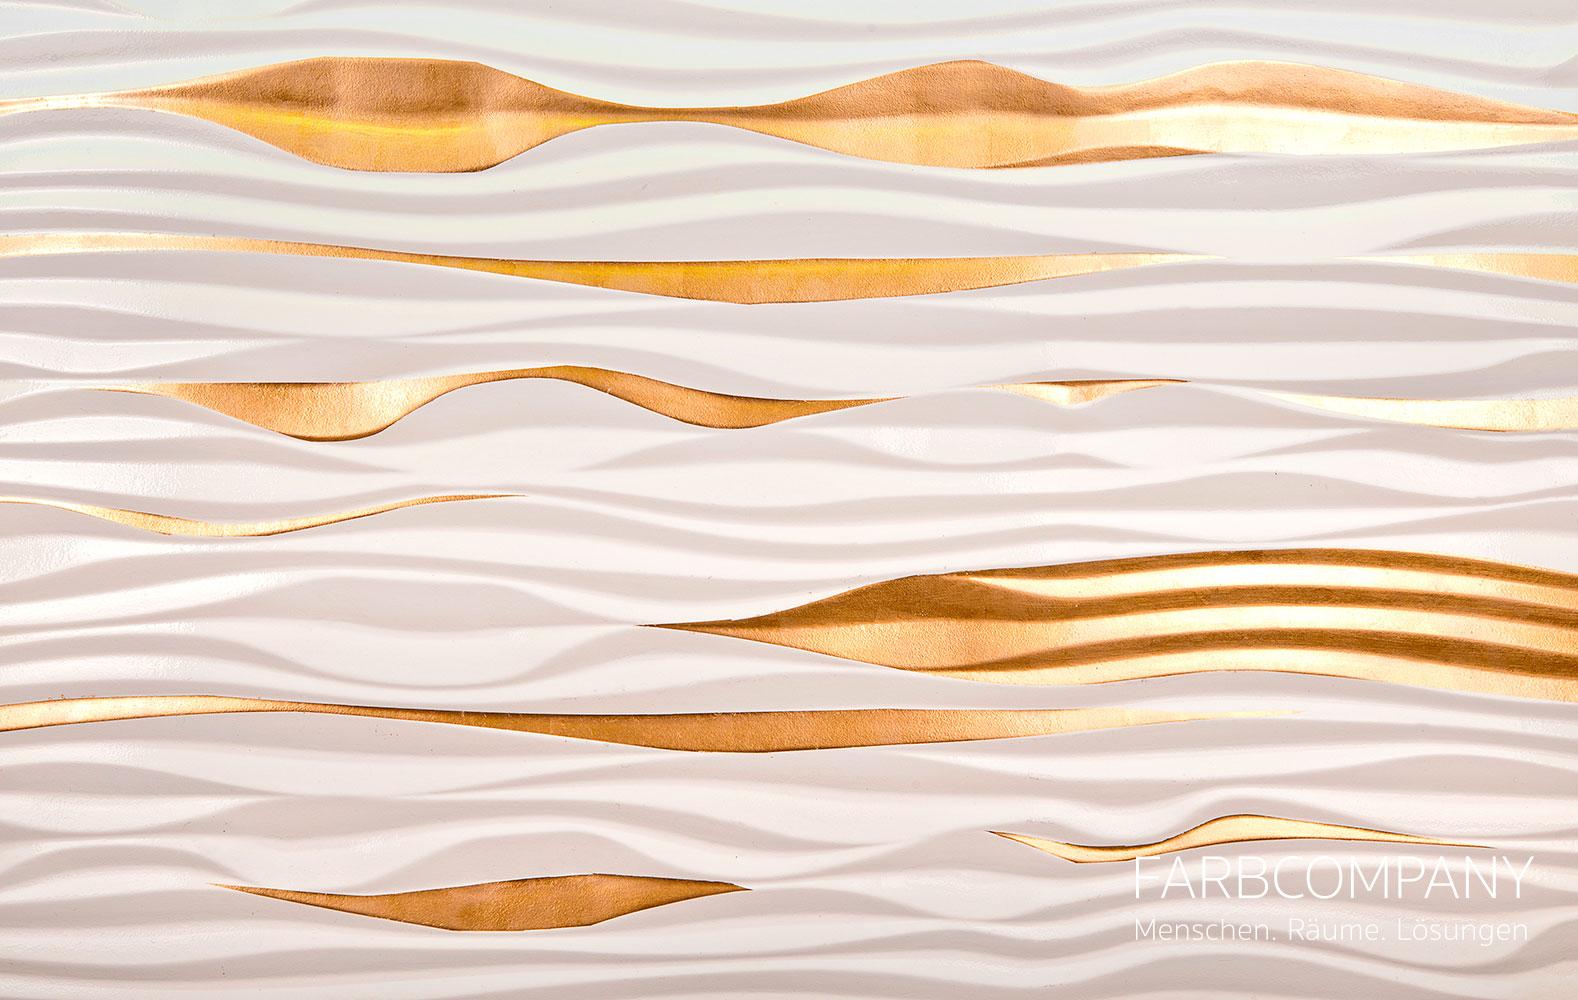 Oberflächentrends/ Gestaltung eines Tresens im Restaurant Joka in Hannover #wandgestaltung #designwand ©Mike Schleupner